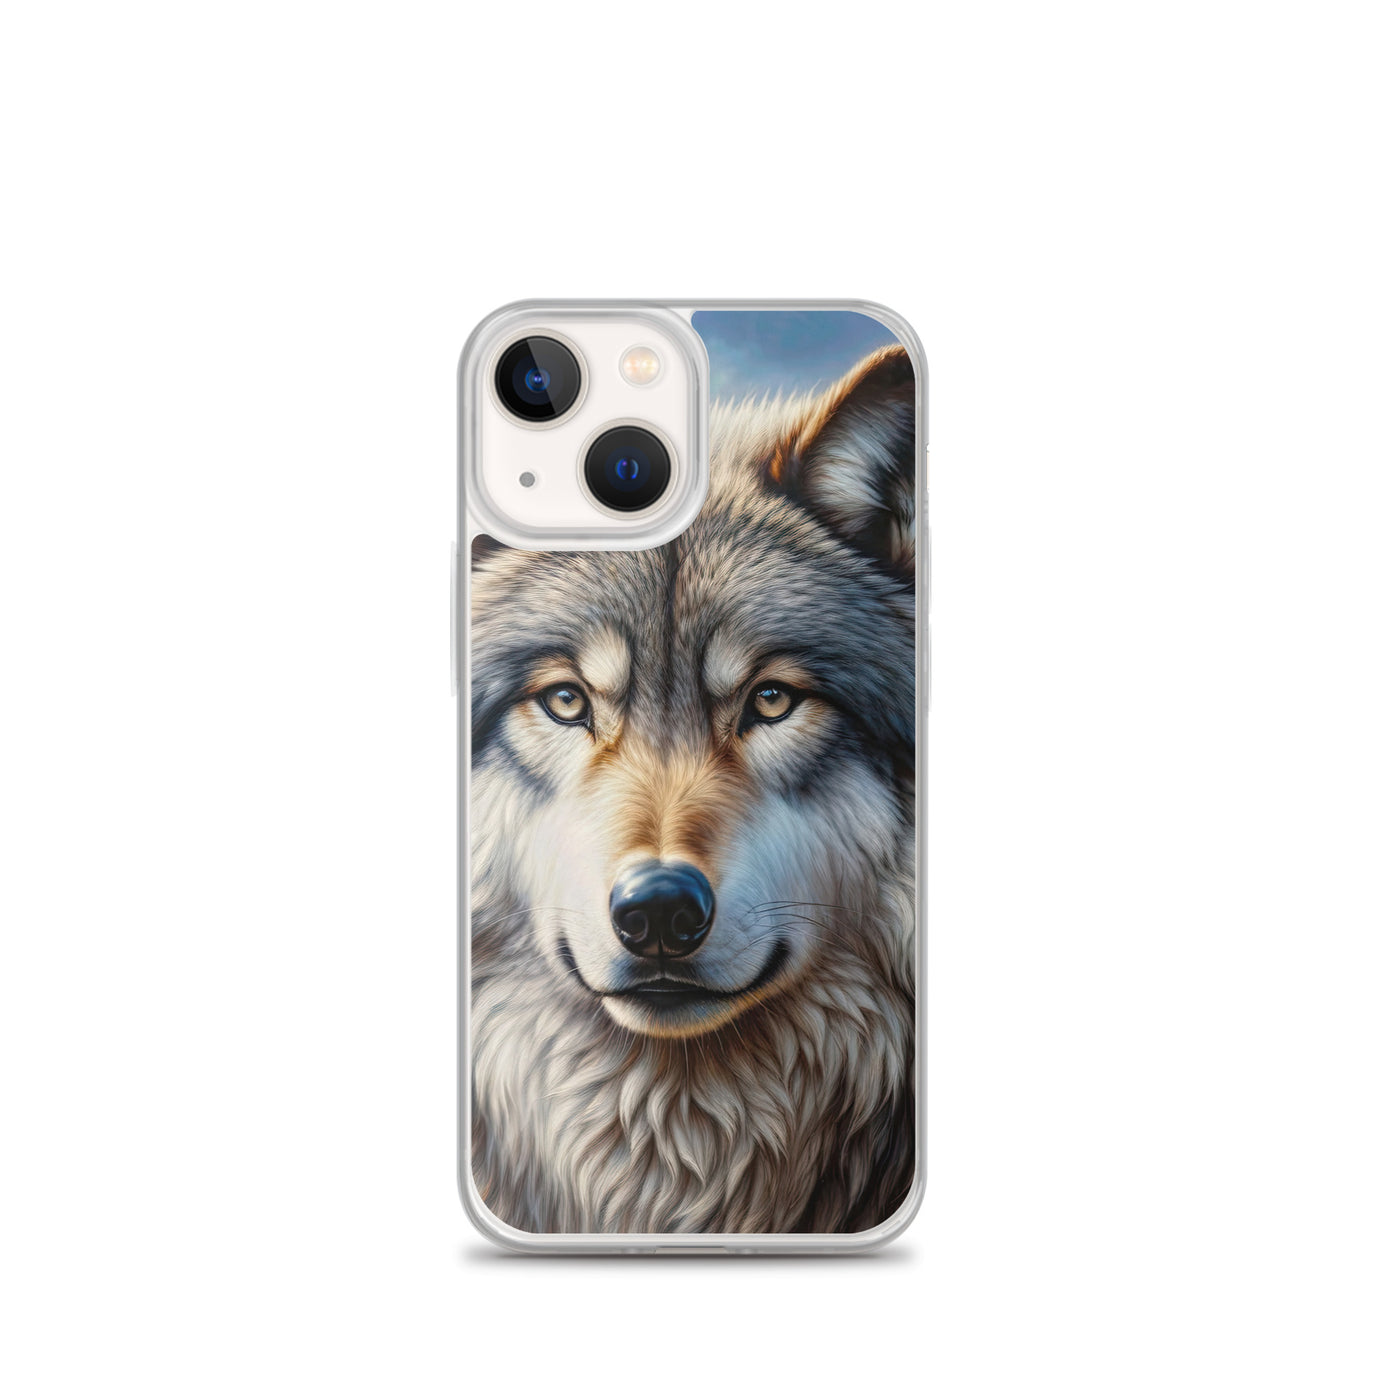 Porträt-Ölgemälde eines prächtigen Wolfes mit faszinierenden Augen (AN) - iPhone Schutzhülle (durchsichtig) xxx yyy zzz iPhone 13 mini